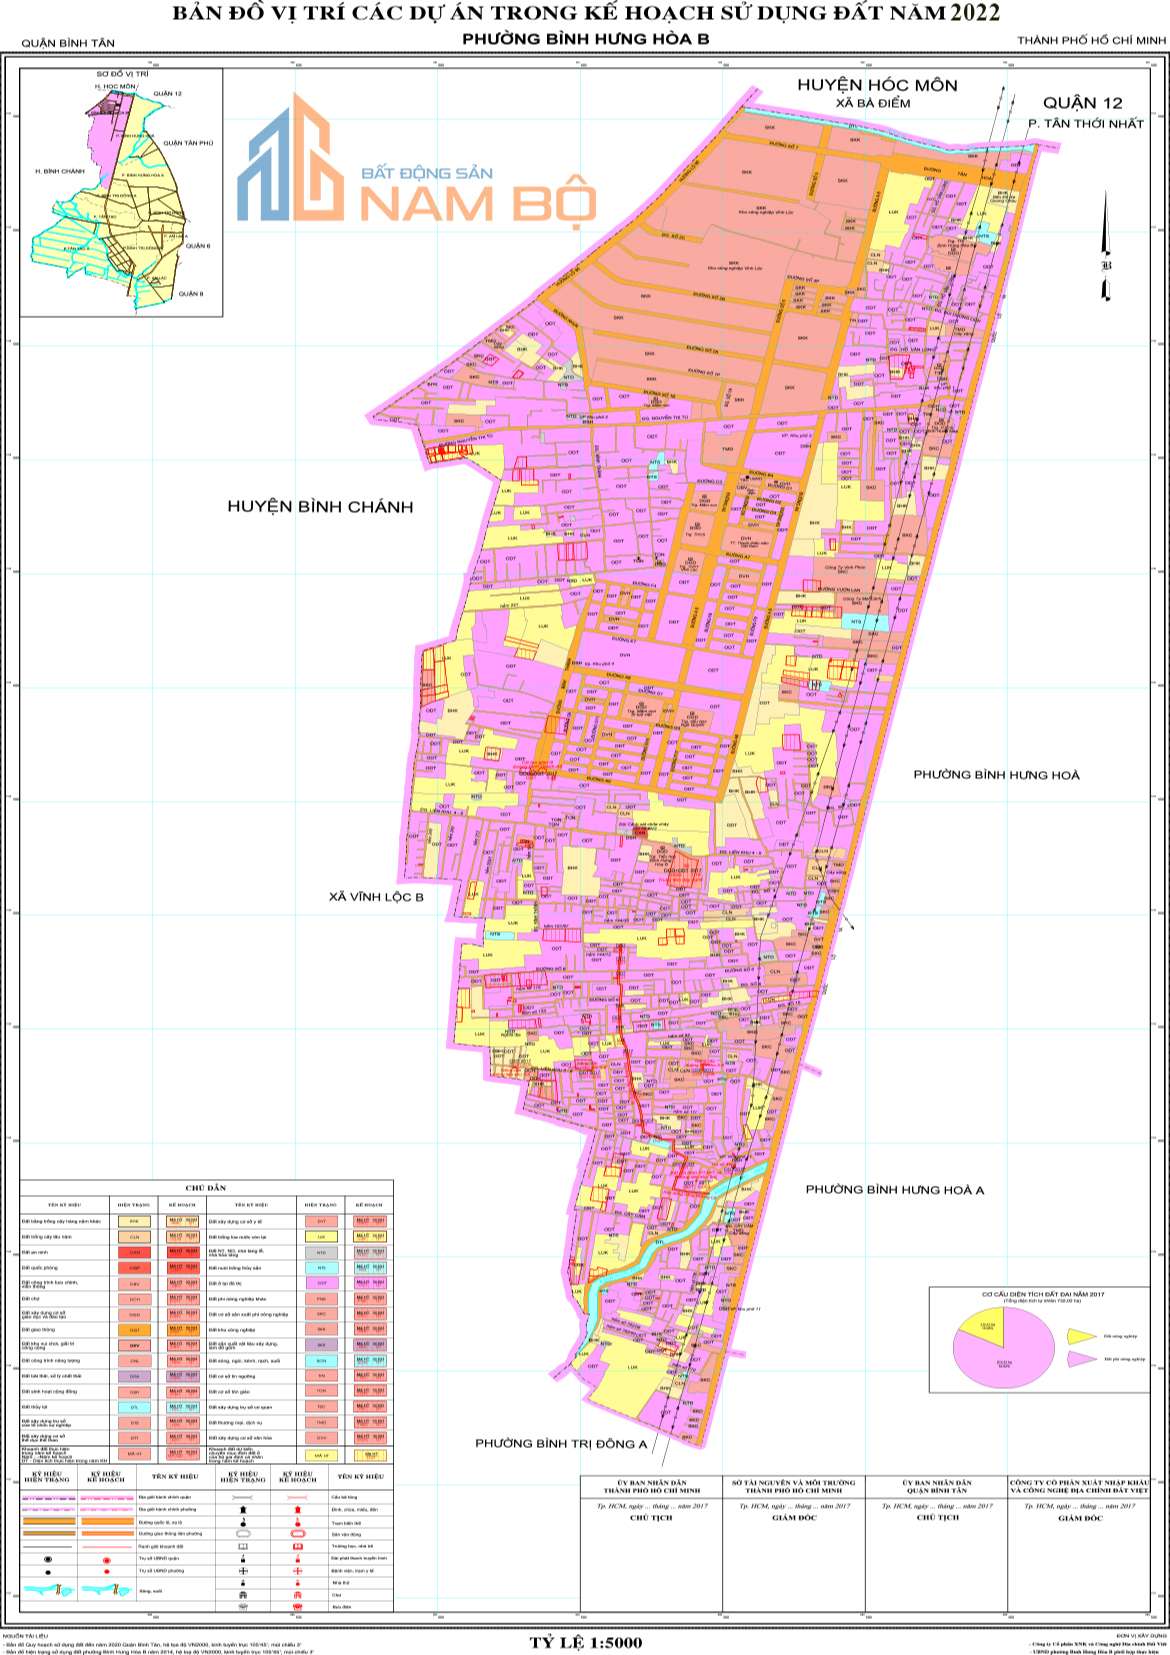 Bản đồ quy hoạch phường Bình Hưng Hòa B